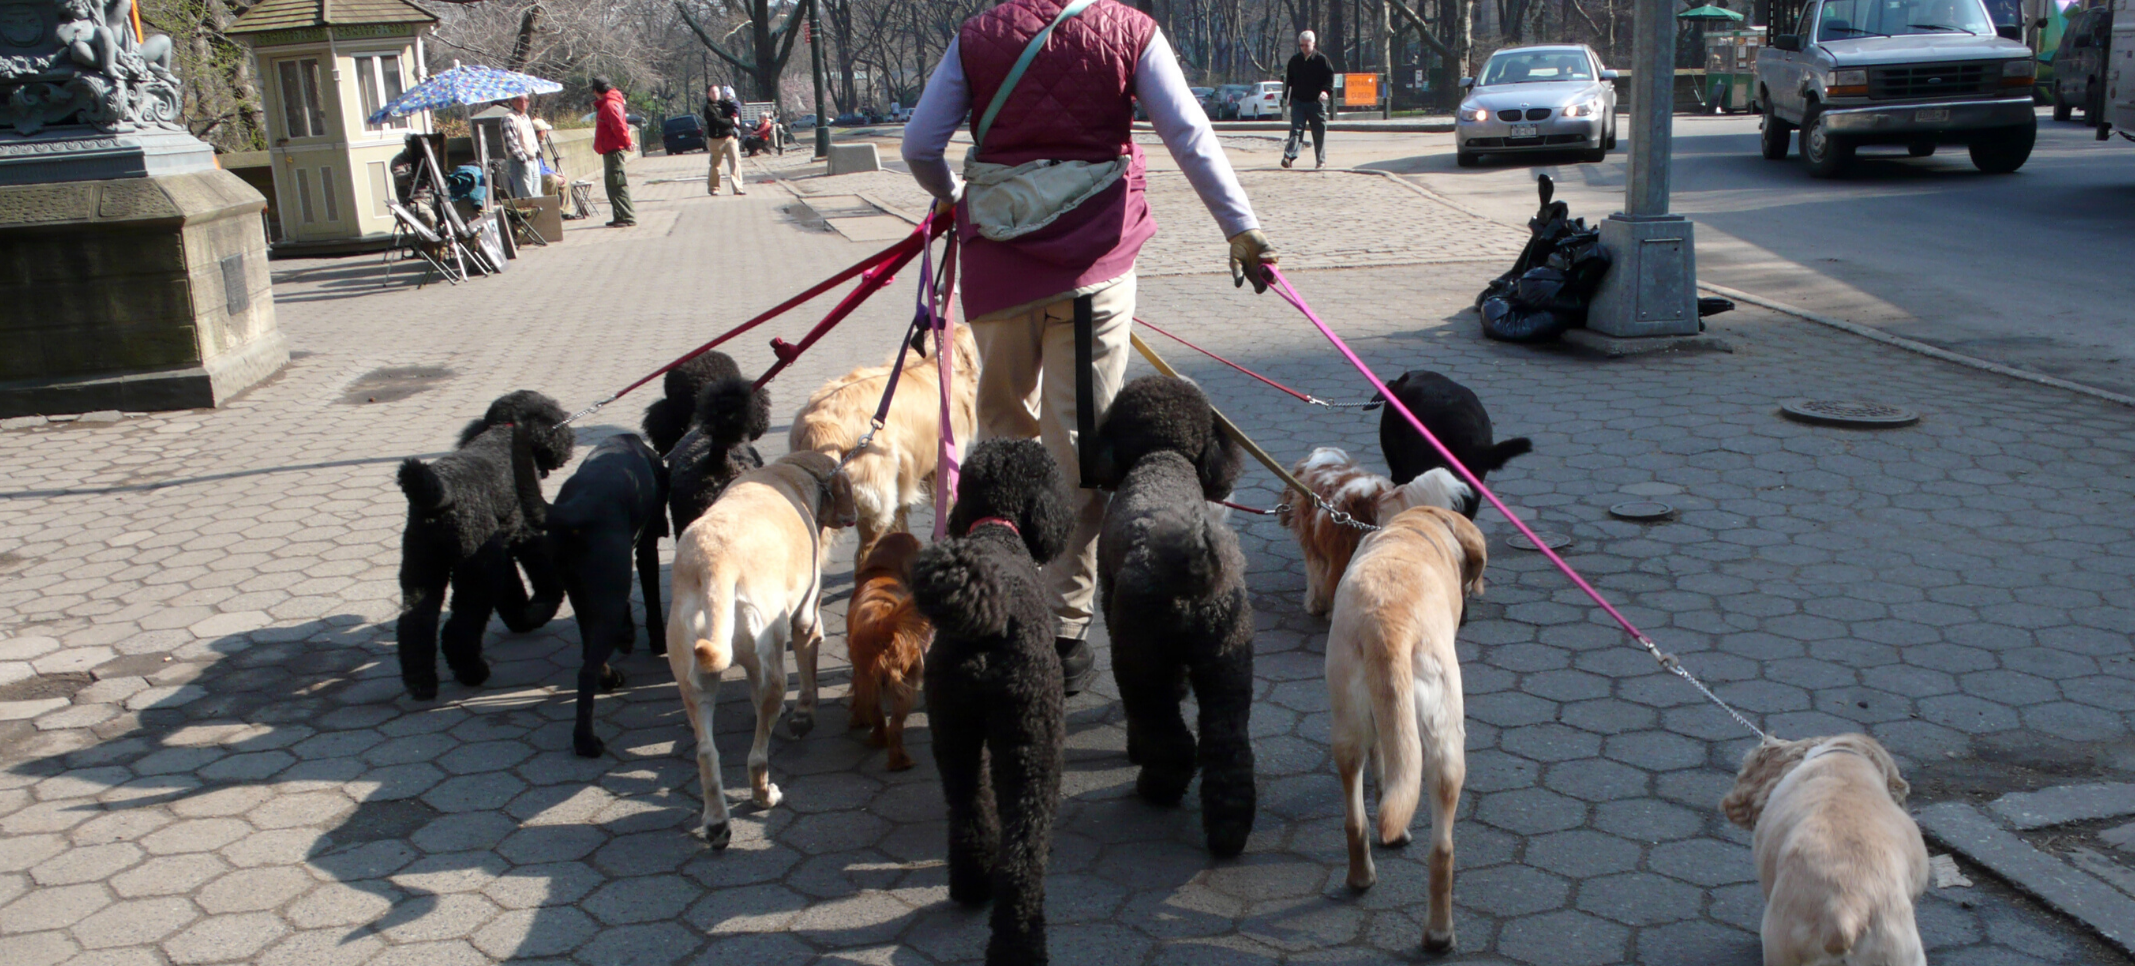 inercia etiqueta Inhibir Cuánto cobrar por pasear perros? - Blog de TinkerLink